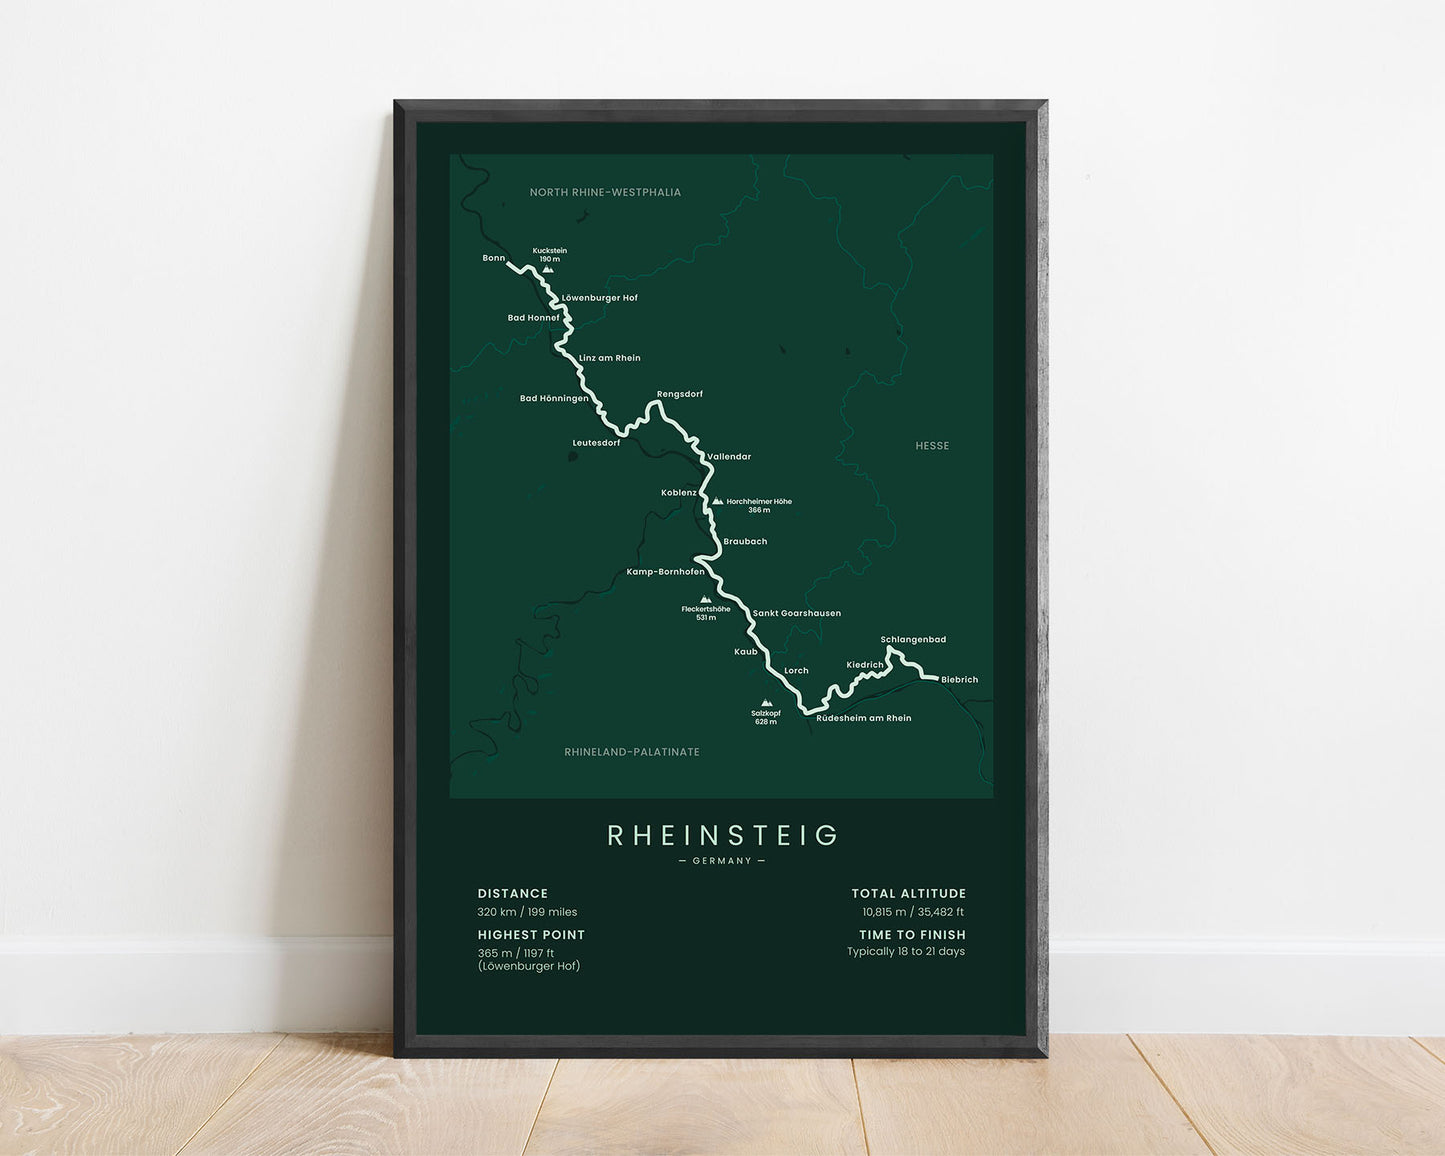 Rheinsteig Trail (Rhine river) trek map art with green background